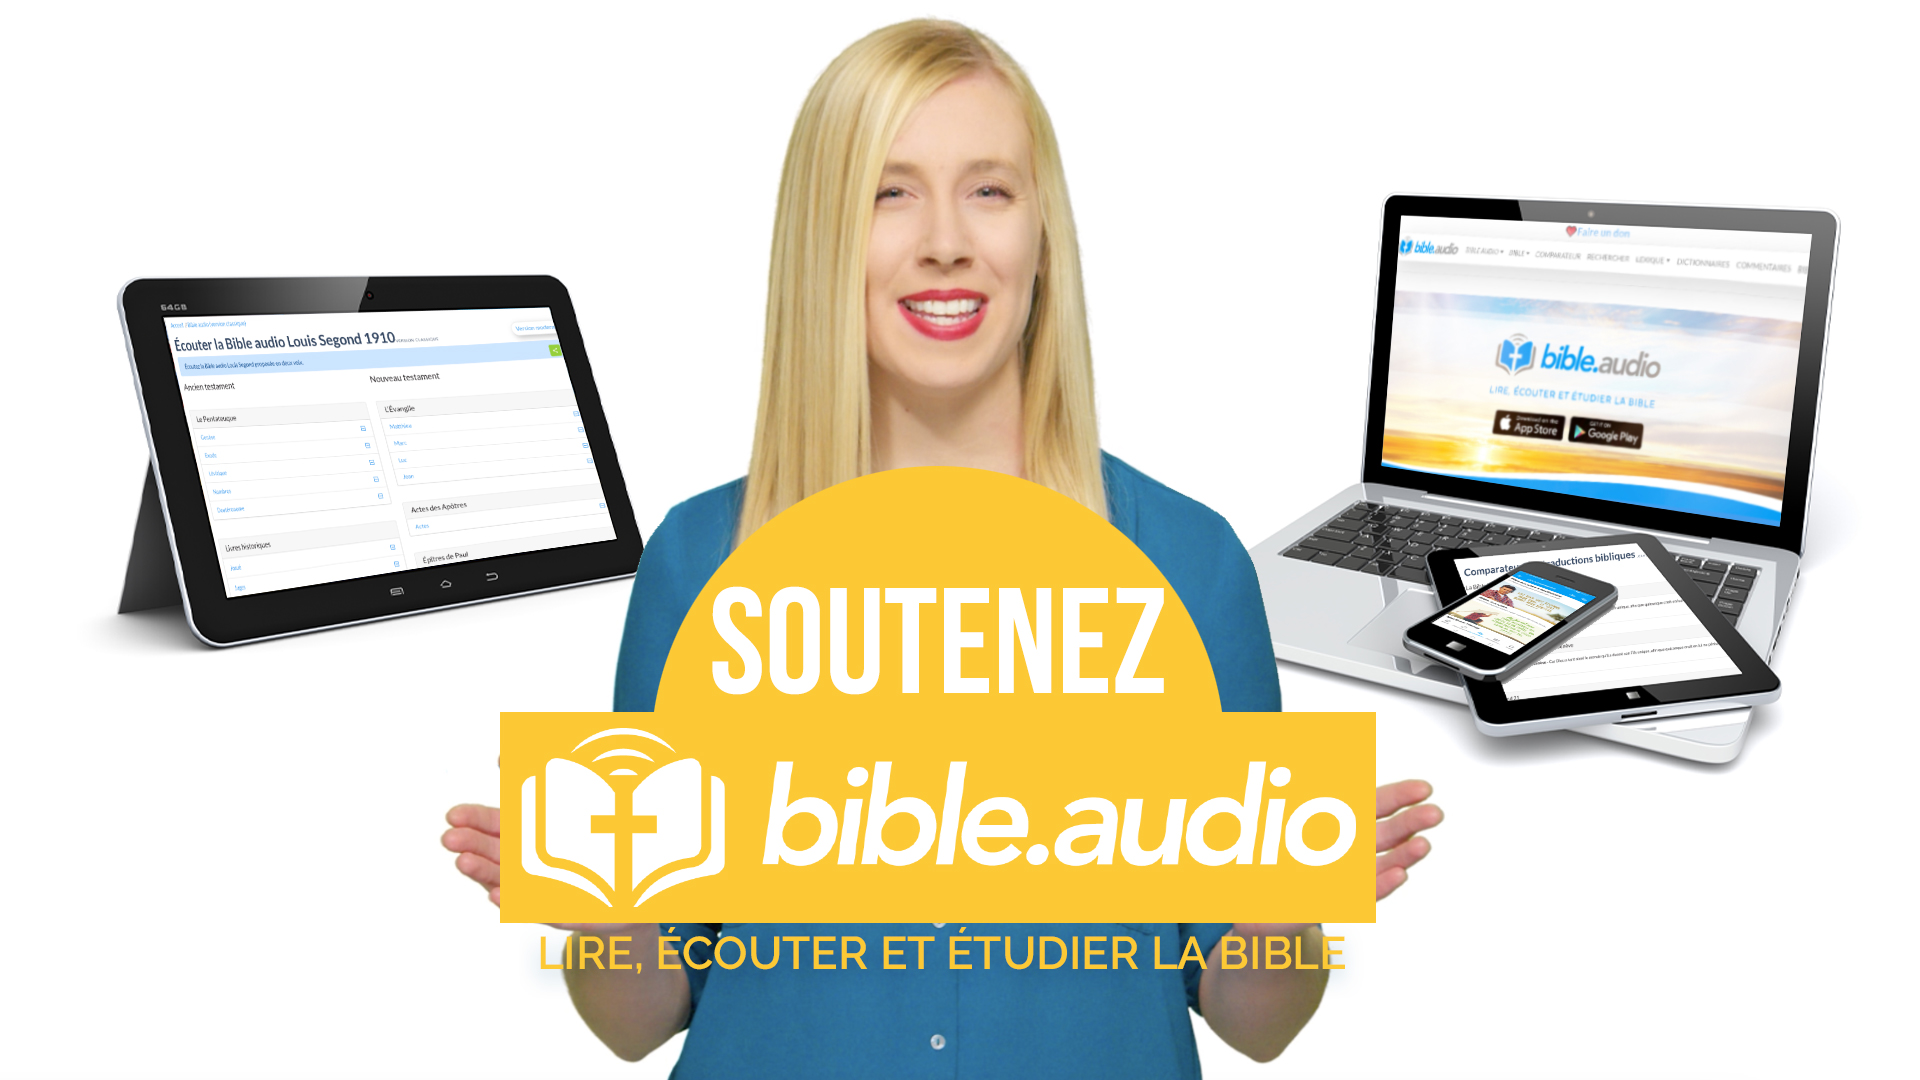 Soutenez bible.audio